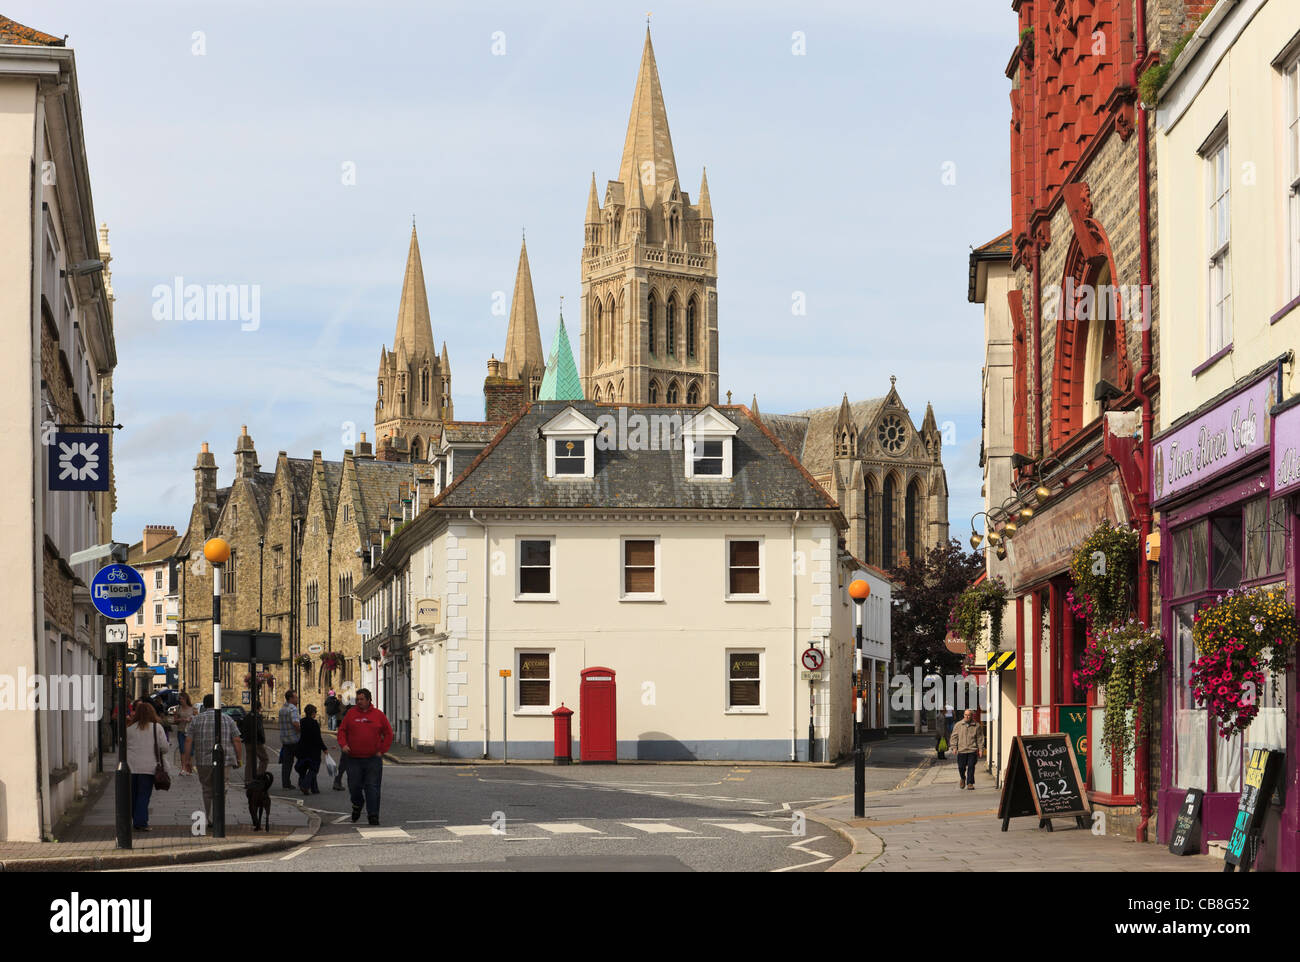 Street Scene und Blick auf Truro Cathedral mit drei Türmen. Quay Street, Truro, Cornwall, England, Großbritannien, Großbritannien. Stockfoto